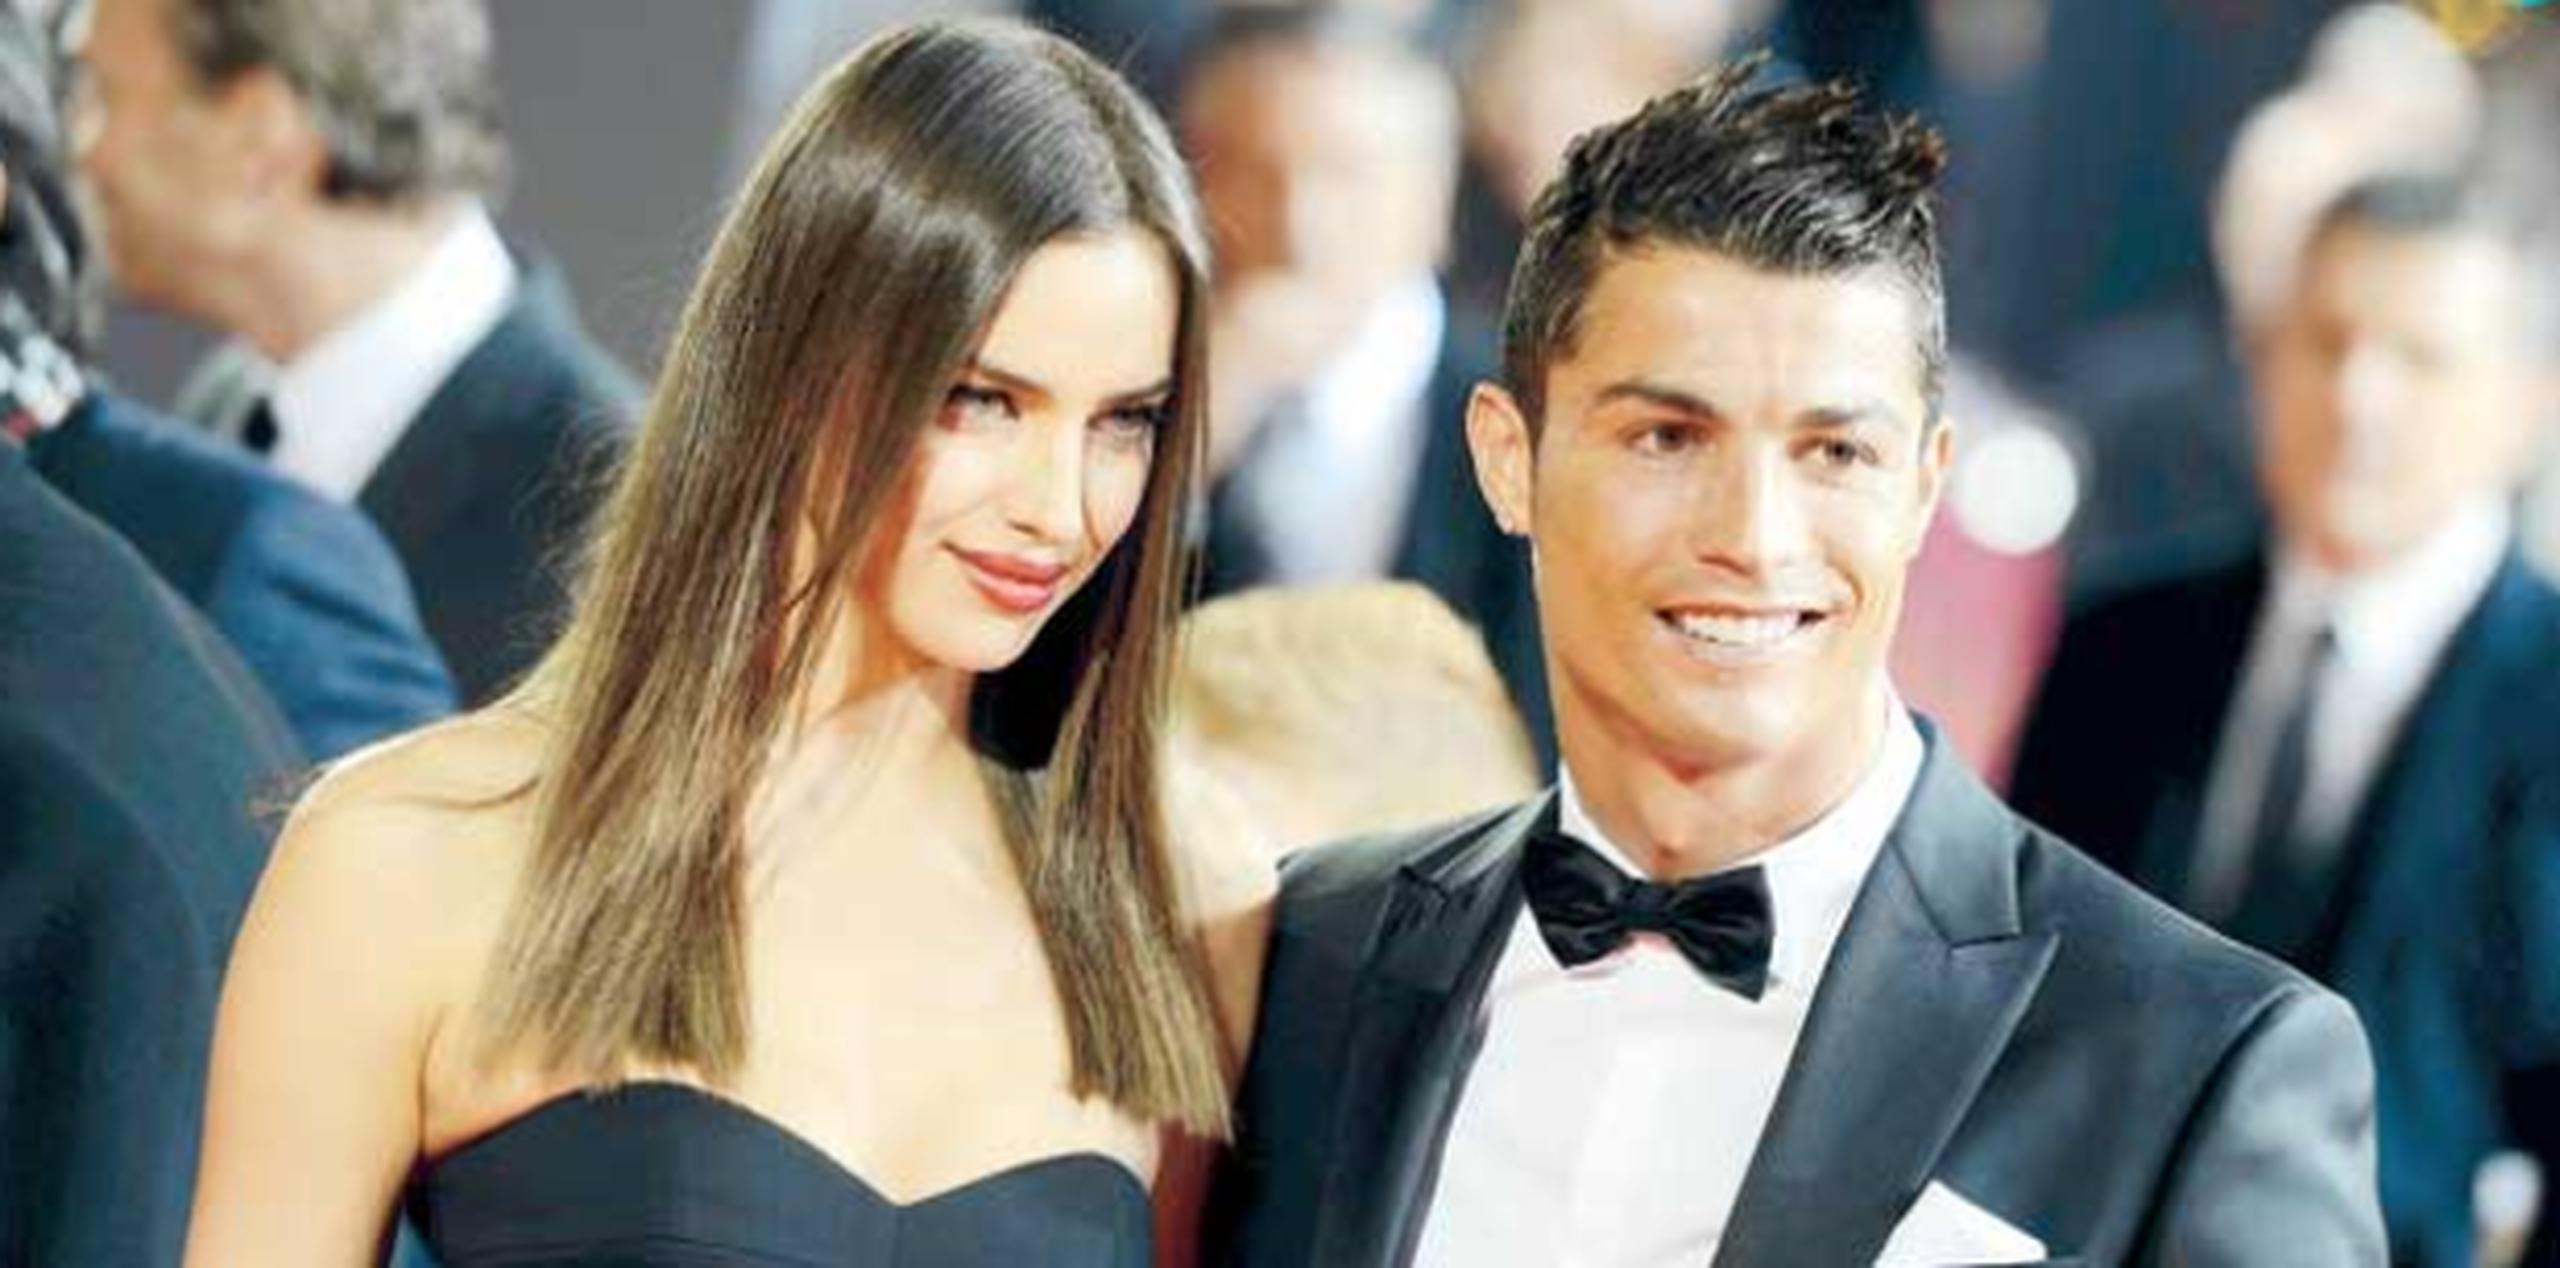 La modelo, de 29 años, era hasta hace cuatro meses pareja del jugador del Real Madrid, Cristiano Ronaldo, con el que mantuvo una relación de tres años. (AP)